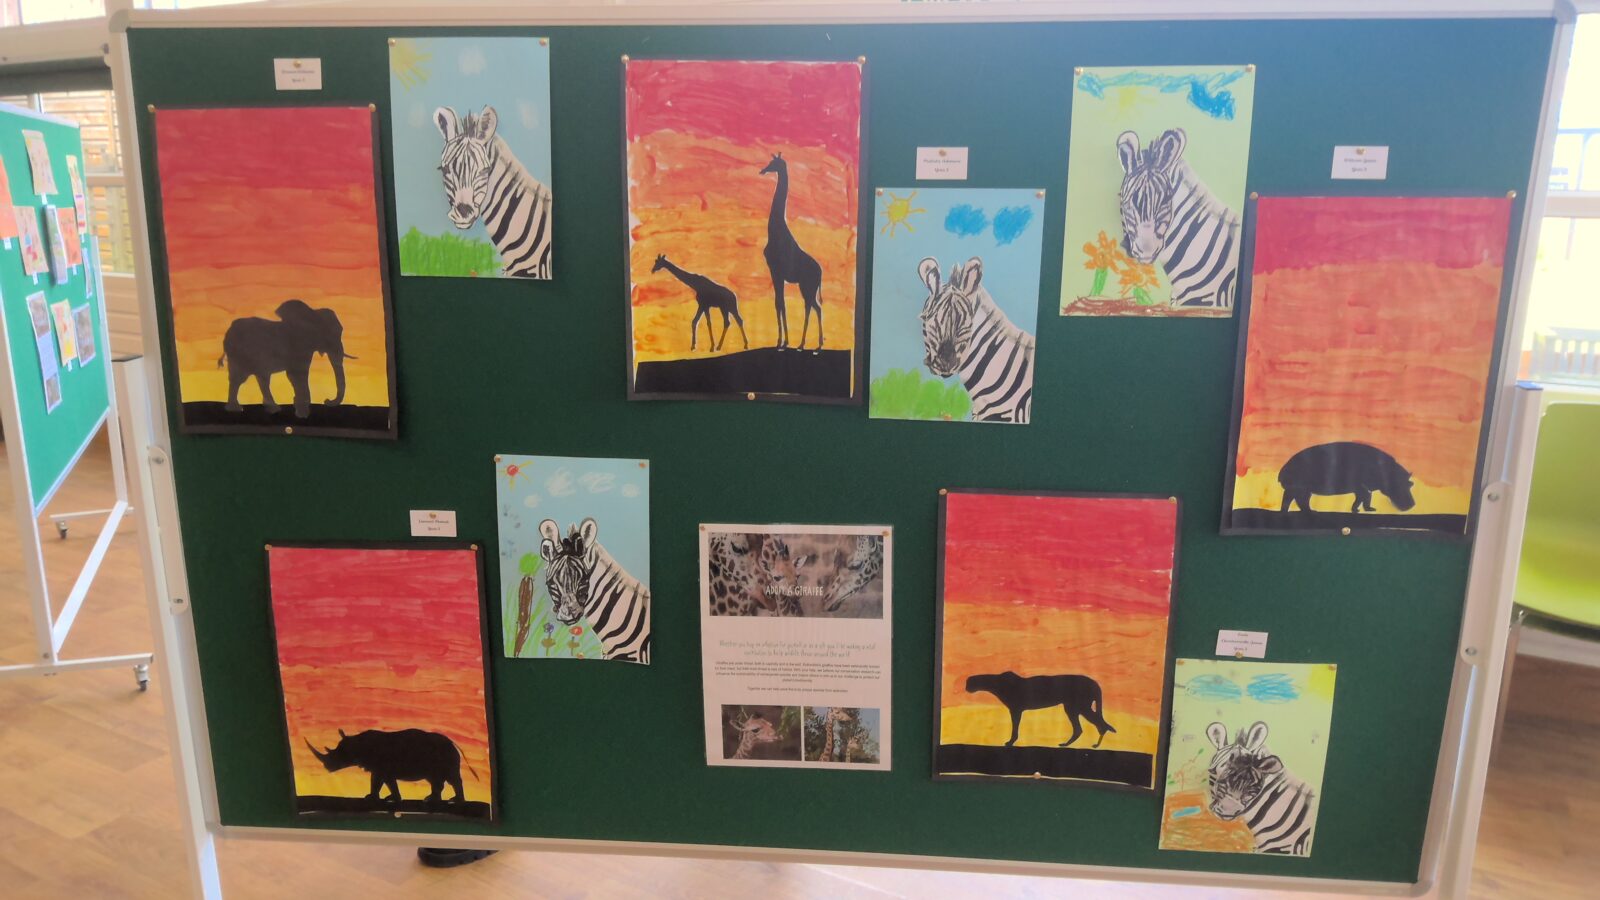 Children's artwork on display featuring African animals